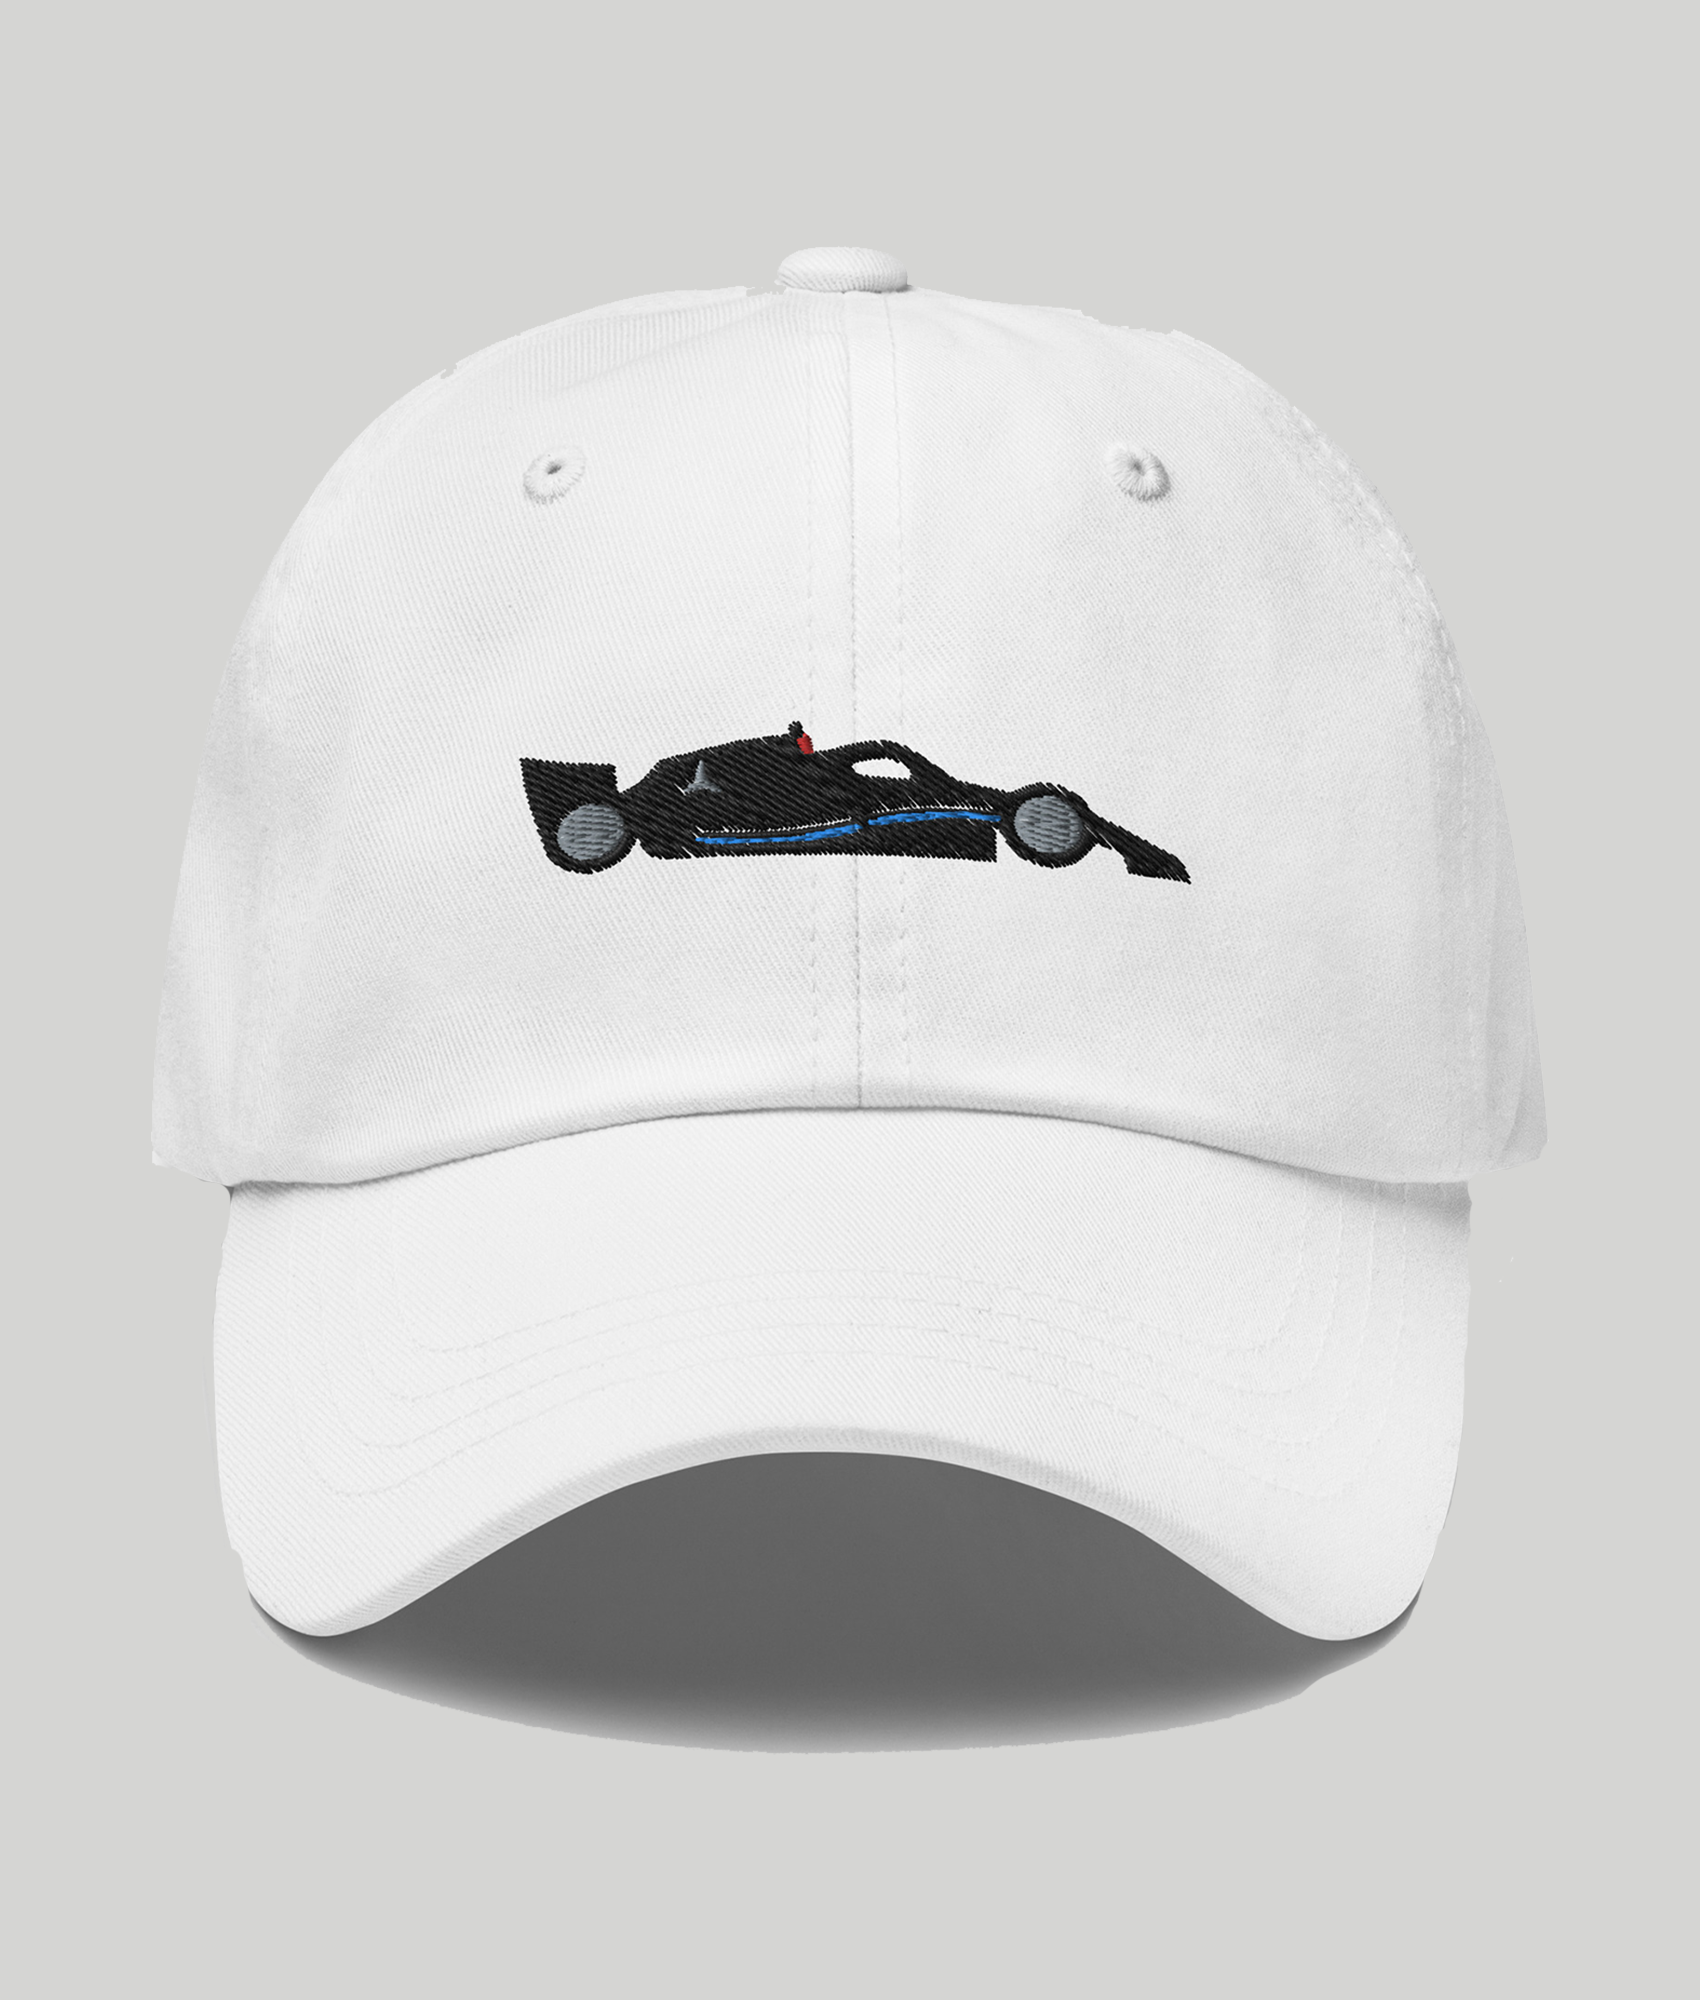 mercedes f1 car hat